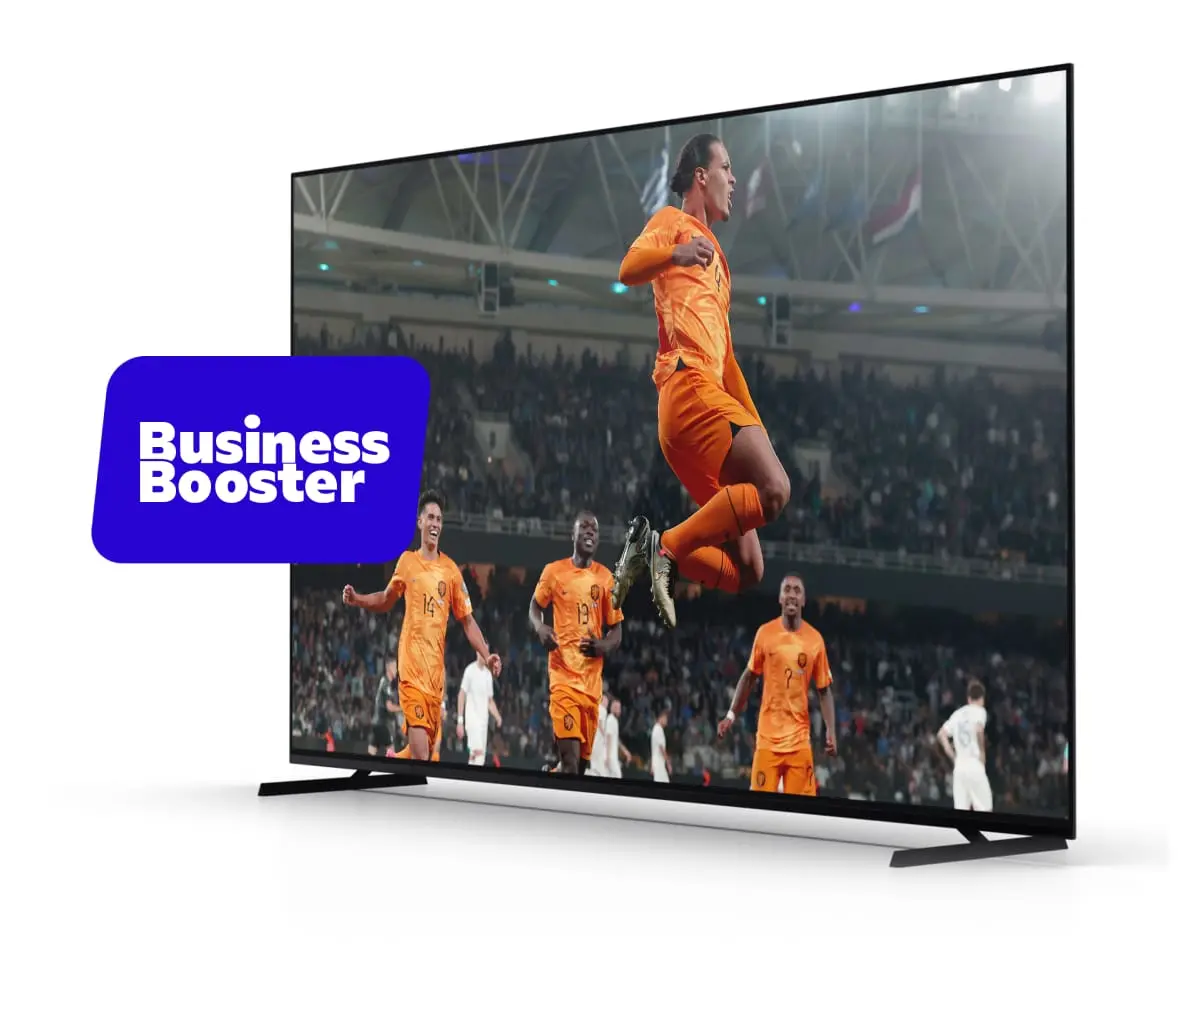 Voetballers van oranje in actie op een grote televisie met het Business Booster logo ernaast